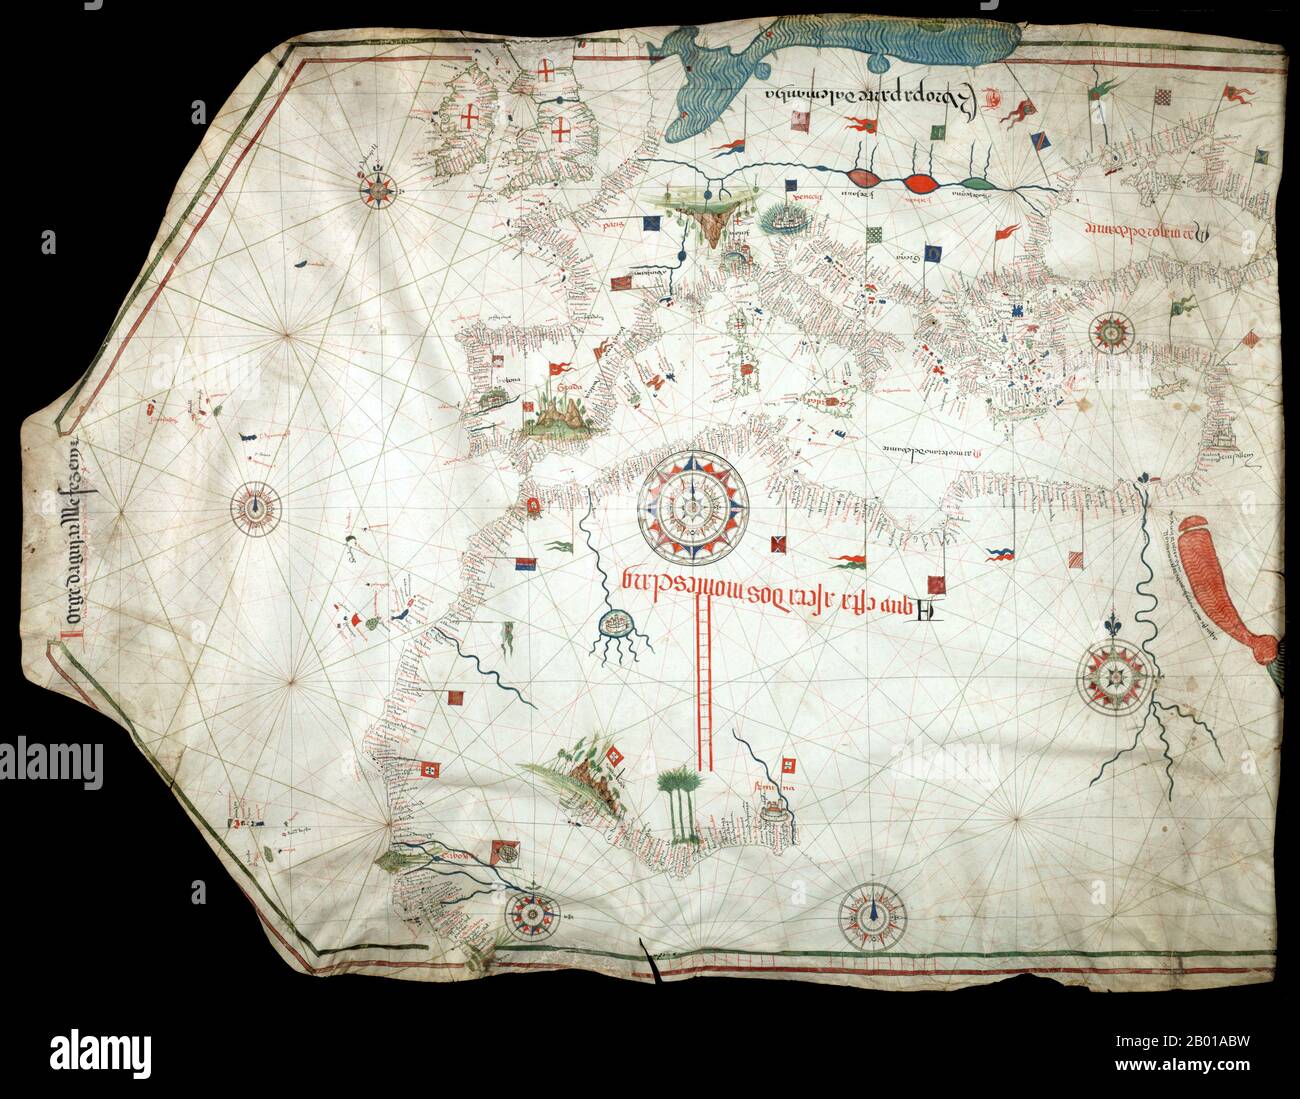 Portugal: Die Karte von Jorge de Aguiar über das Mittelmeer, Westeuropa und die afrikanische Küste, 1492. Eine portolanische Karte aus dem Jahr 1492, die älteste bekannte signierte und datierte Karte portugiesischer Herkunft. Die Kartographie-Technologien haben sich im Zeitalter der Entdeckung stark weiterentwickelt. Die iberischen Kartenhersteller konzentrierten sich insbesondere auf praktische Karten, die als Navigationshilfen verwendet werden sollten. Im Gegensatz zu spanischen Karten, die als Staatsgeheimnis galten, wurden portugiesische Karten von anderen Ländern verwendet, und portugiesische Kartographen nutzten das Geschick und die Kenntnisse anderer Kulturen, insbesondere auch der islamischen,. Stockfoto